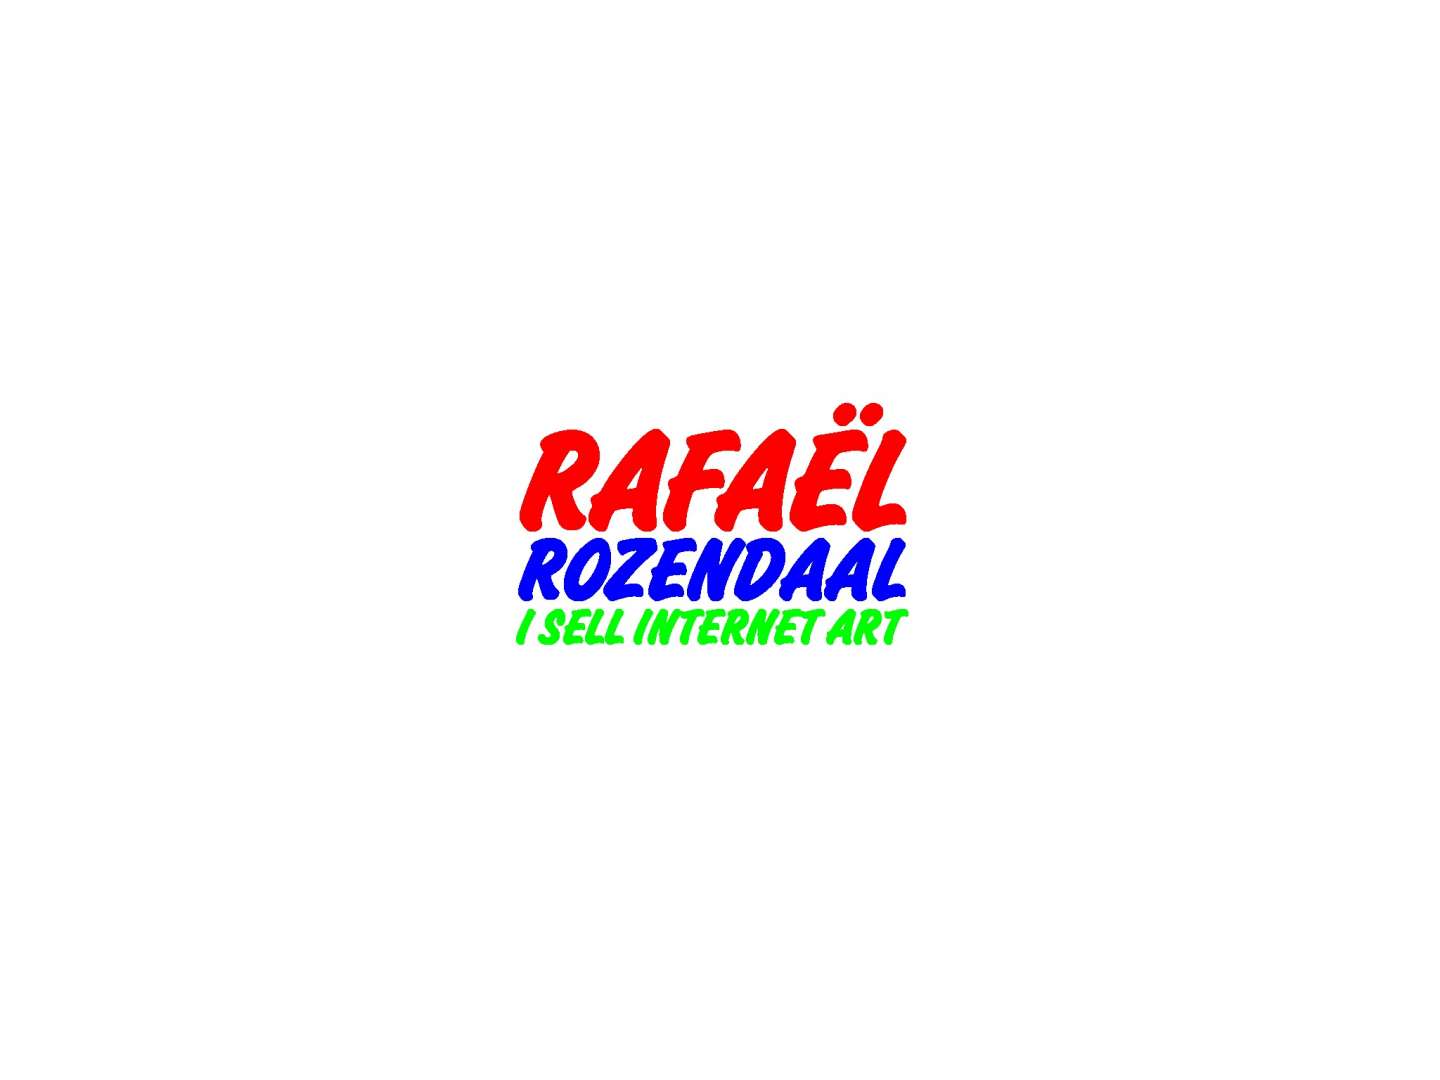 Rafaël Rozendaal